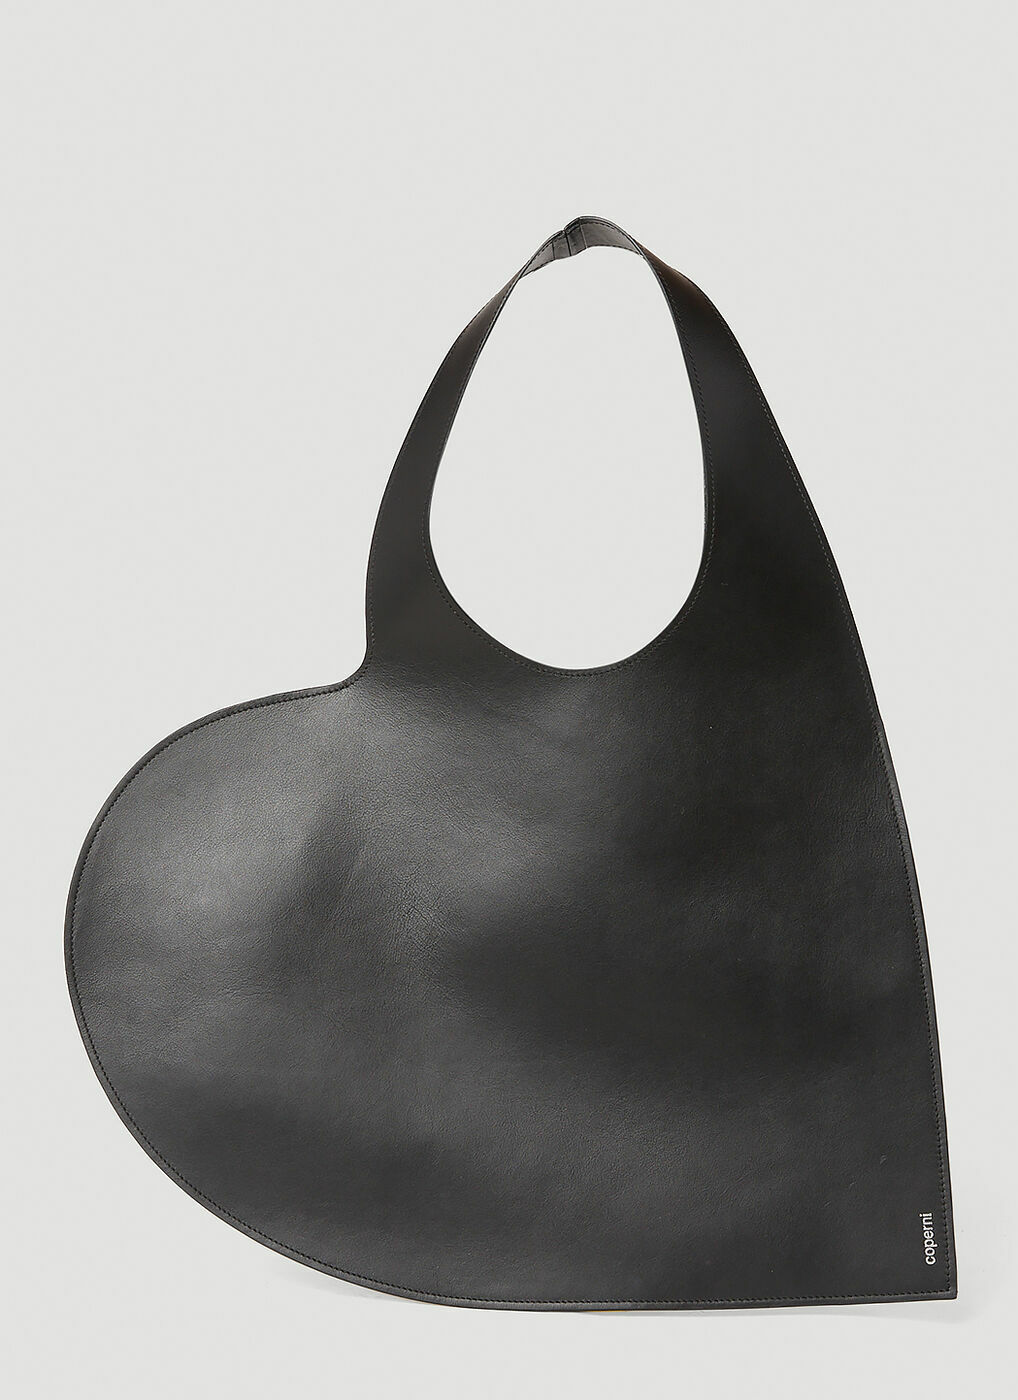 Coperni - Heart Tote Bag in Black Coperni